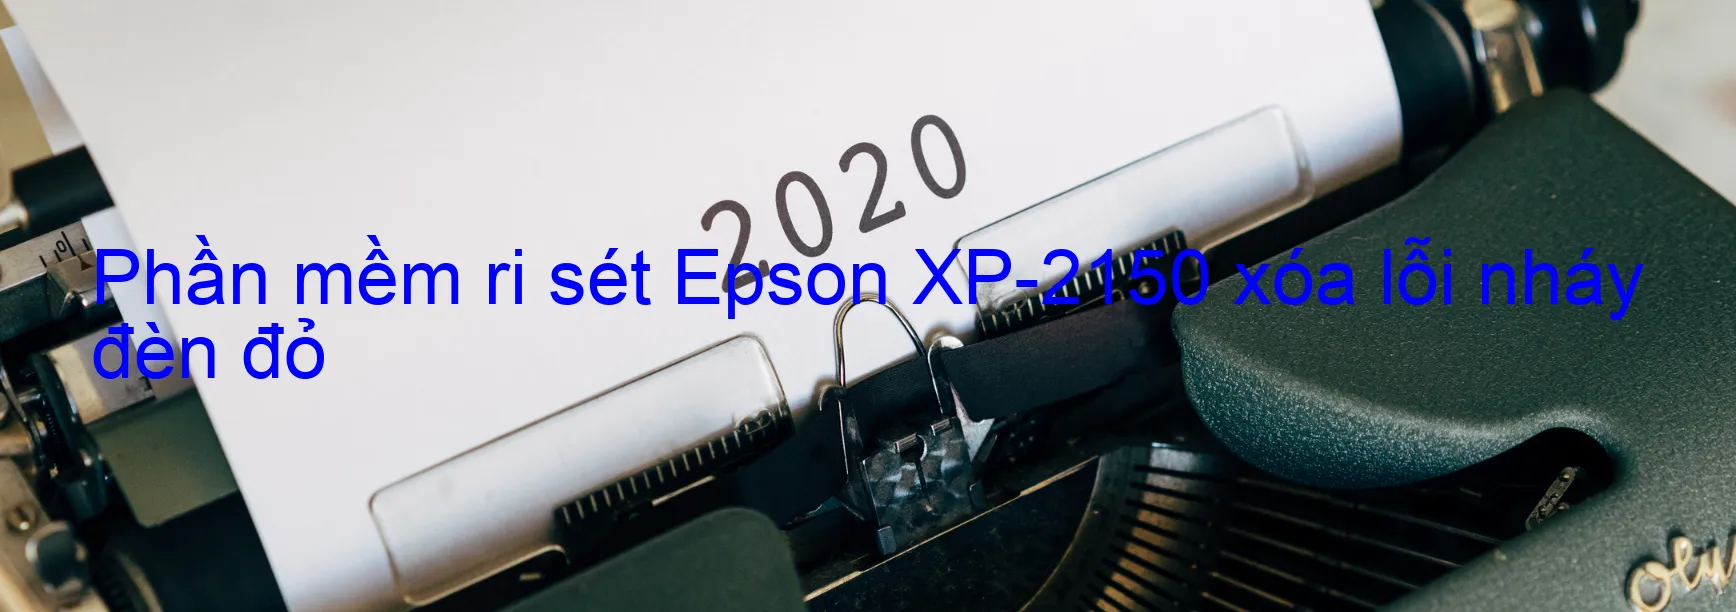 Phần mềm reset Epson XP-2150 xóa lỗi nháy đèn đỏ